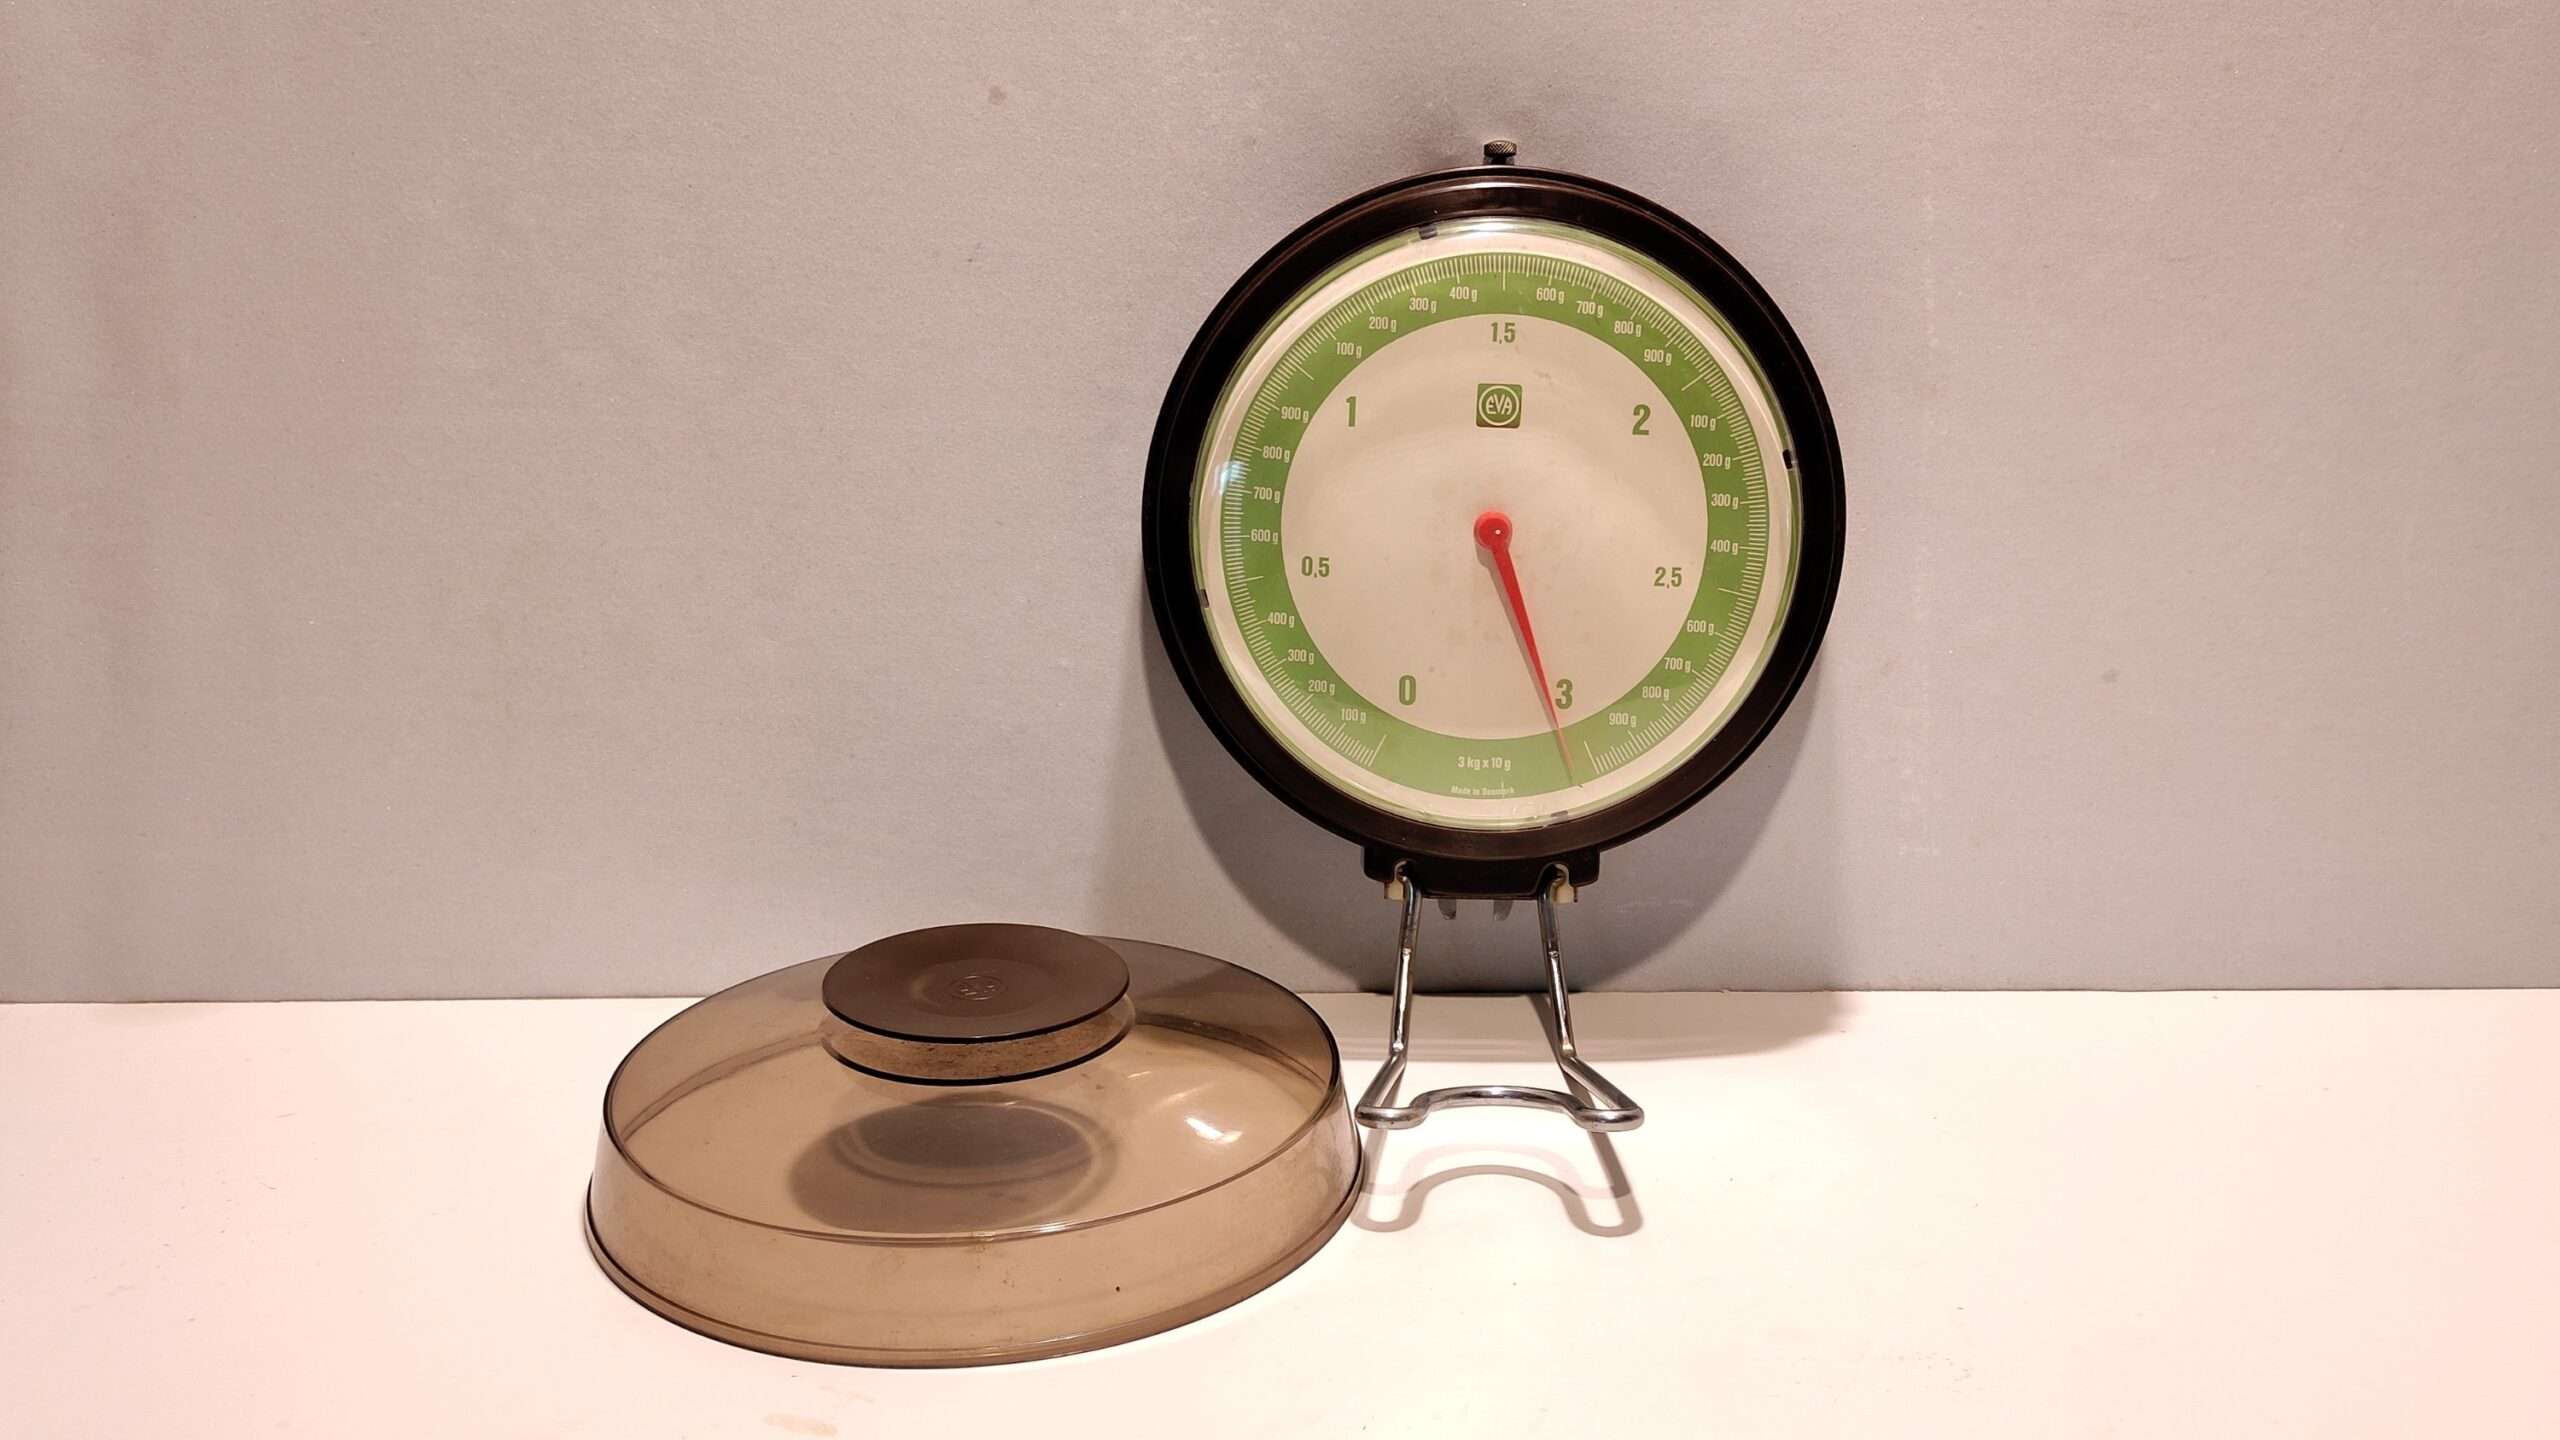 Original EVA væghængt køkkenvægt. Brun med grønt display. 0-3 kilo • Møllers smukkelamper.dk - Retro vintage lamper og lampedele